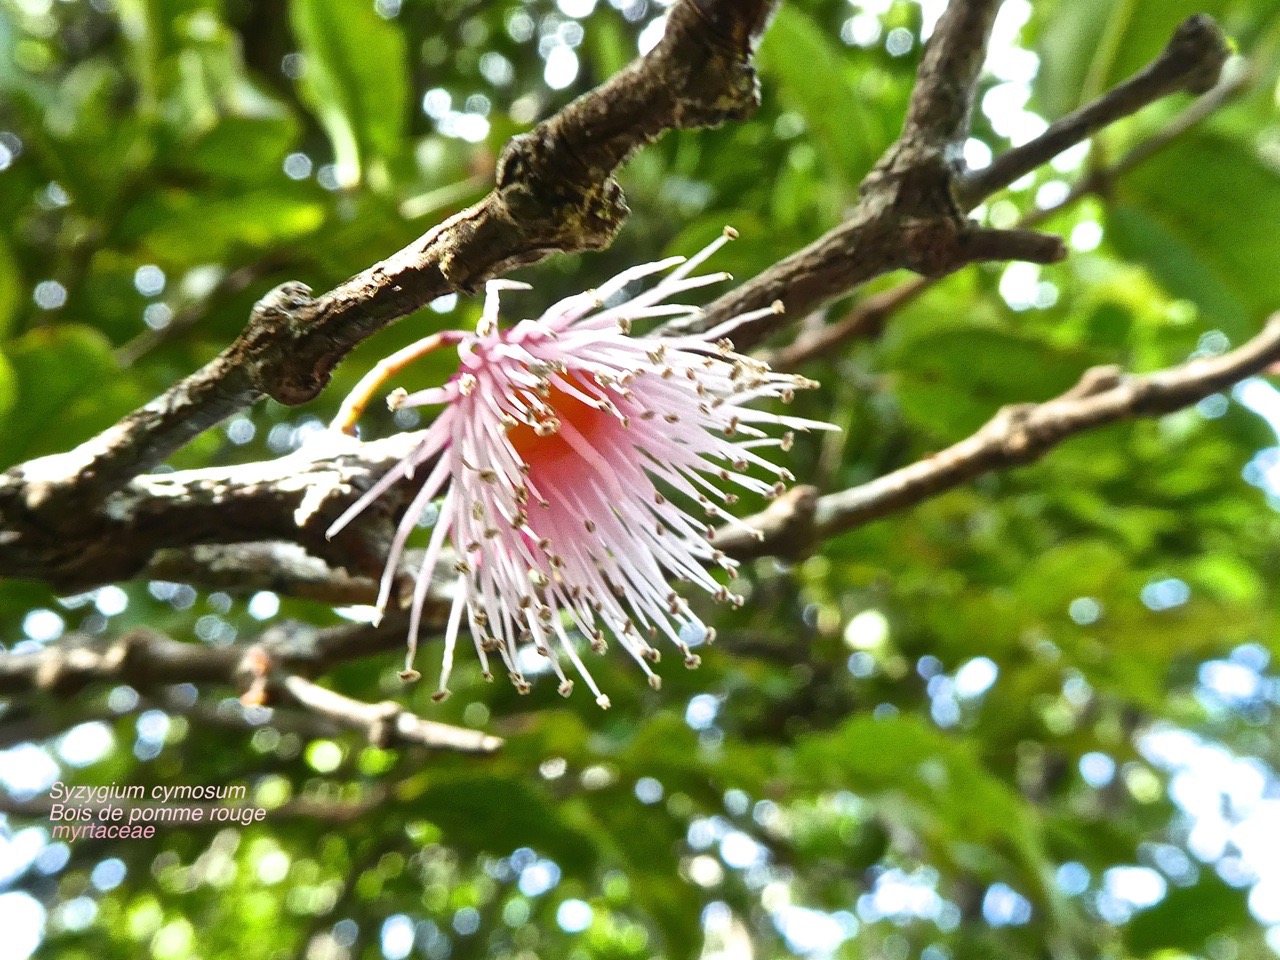 Syzygium cymosum. bois de pomme rouge P1380491